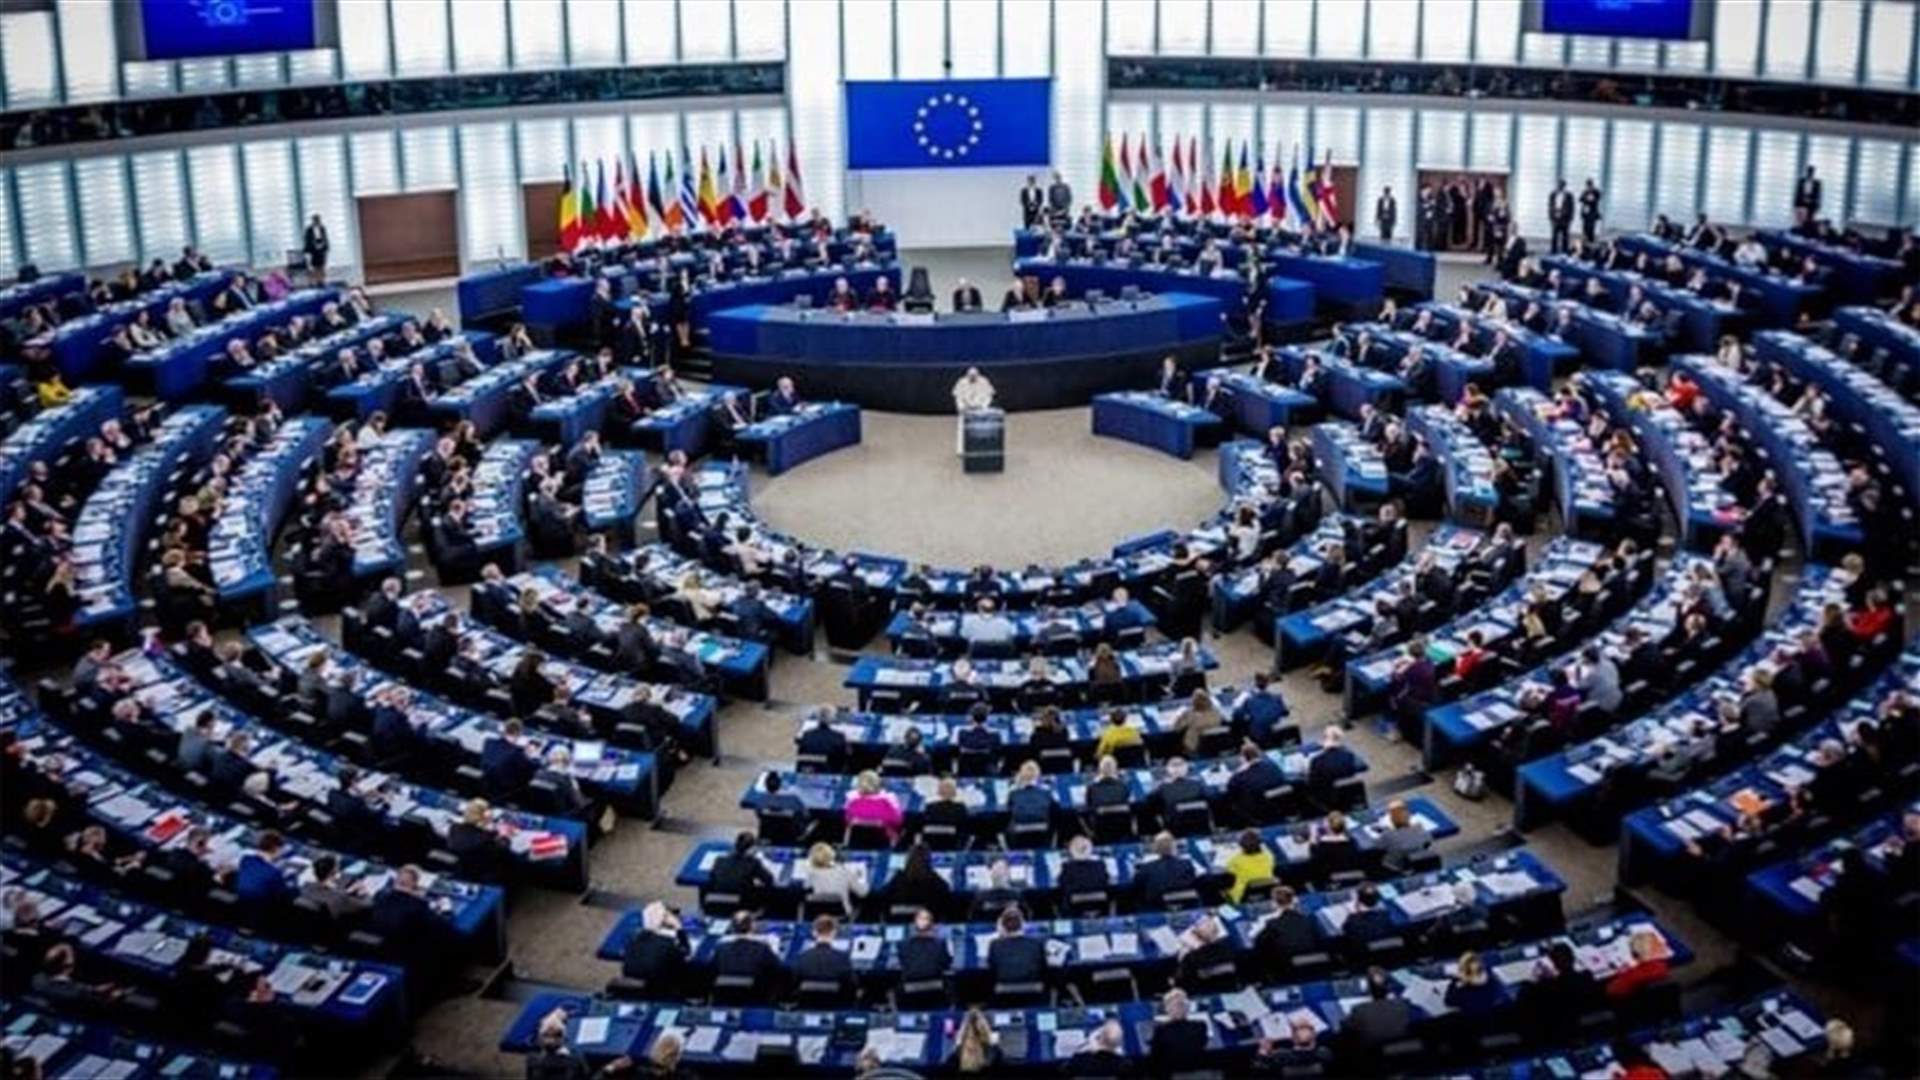 فون دير لايين: شبهات الفساد في البرلمان الأوروبي خطرة جدا